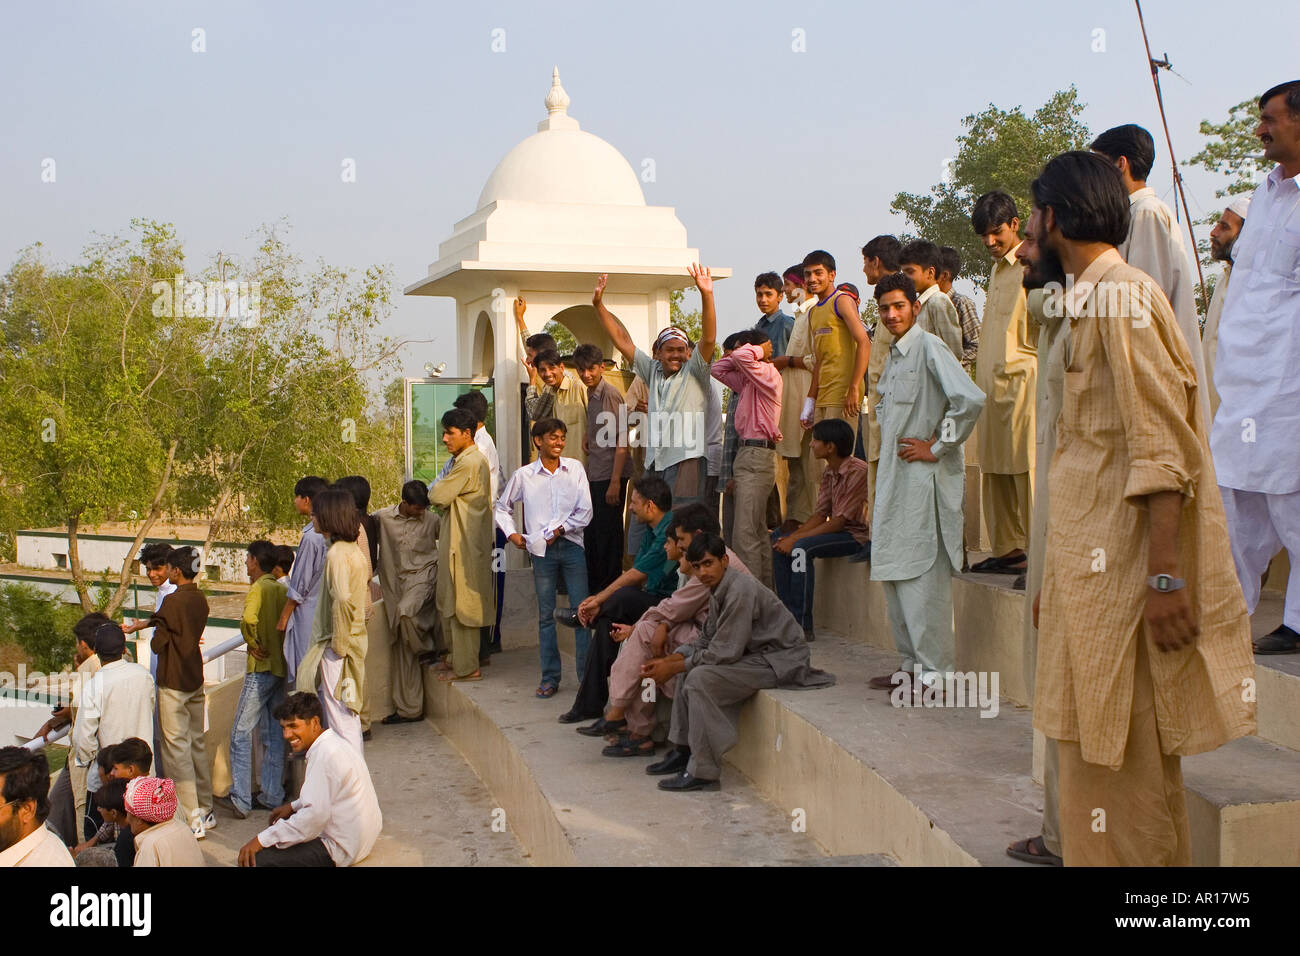 Die pakistanische Masse aufgeregt für die tägliche Zeremonie auf den indisch-pakistanischen Grenze Attari Wagah Grenze Pakistan Stockfoto